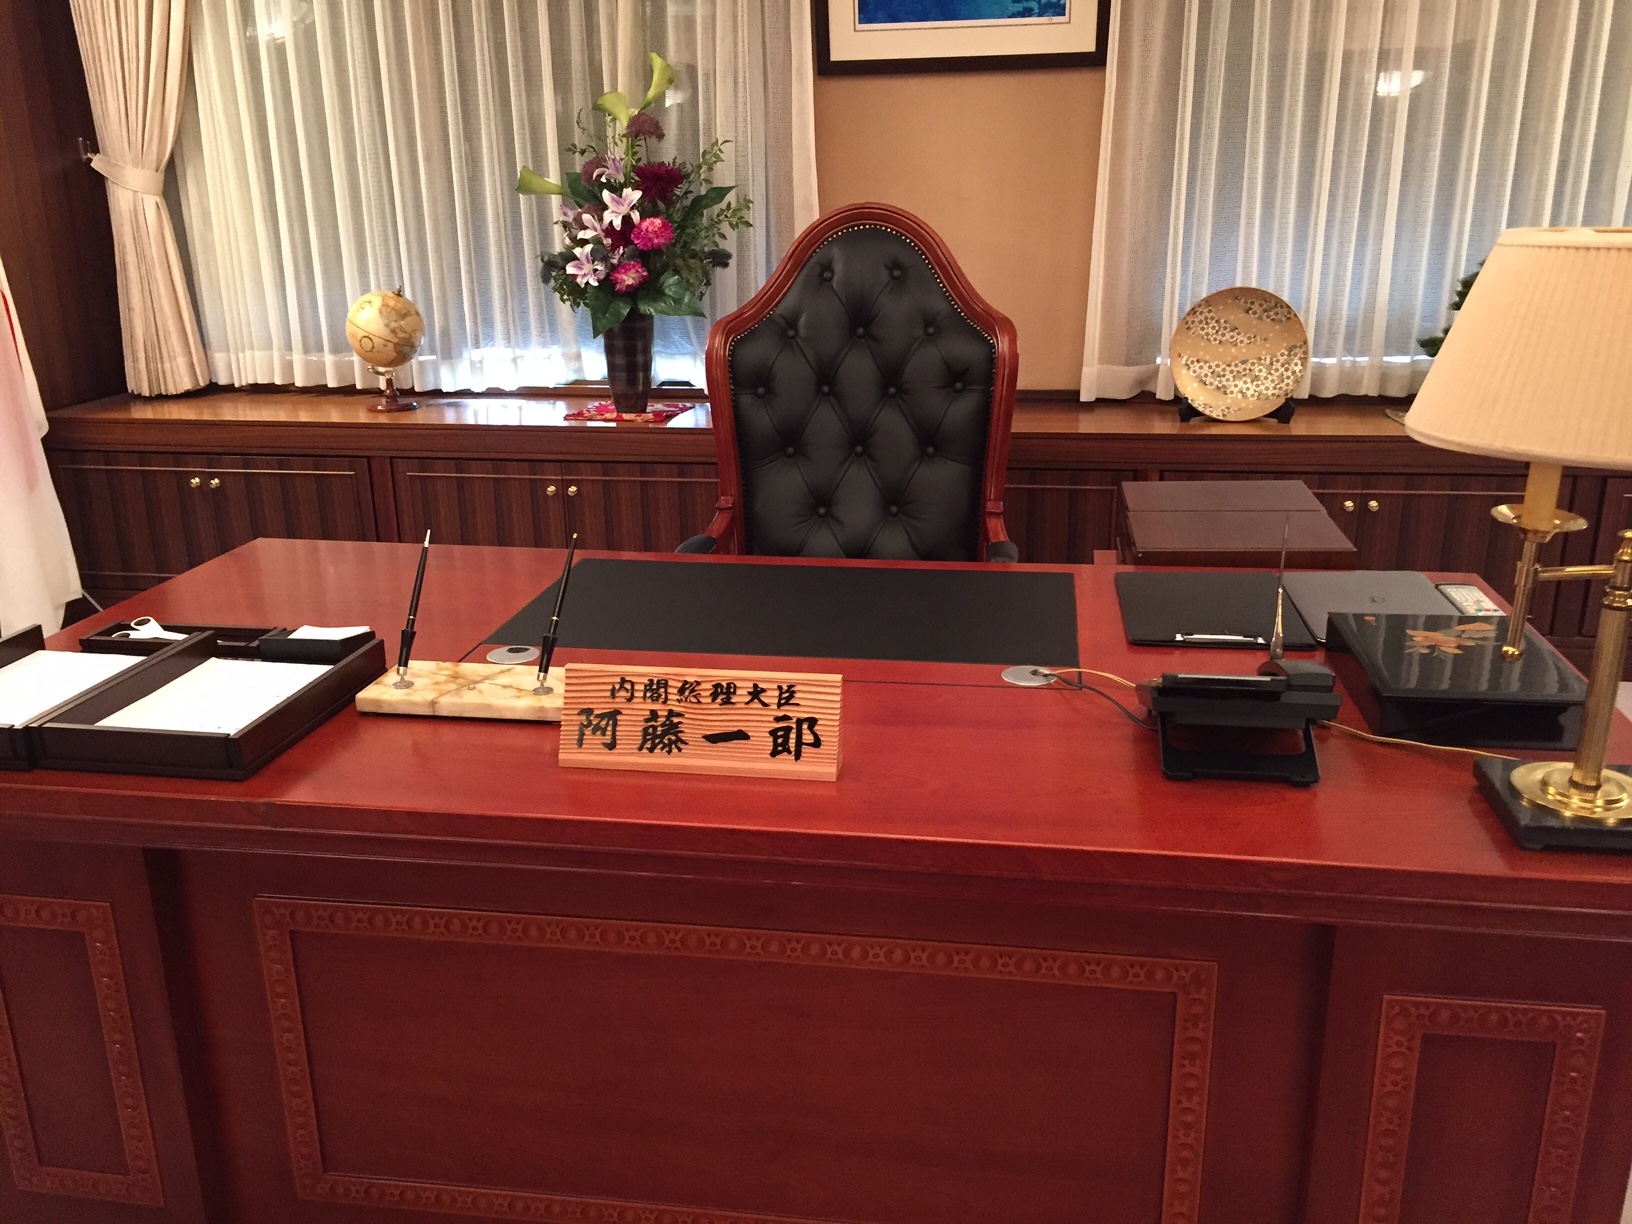 内閣総理大臣阿藤一郎と書かれた木札が置かれた立派な机を正面から写した写真